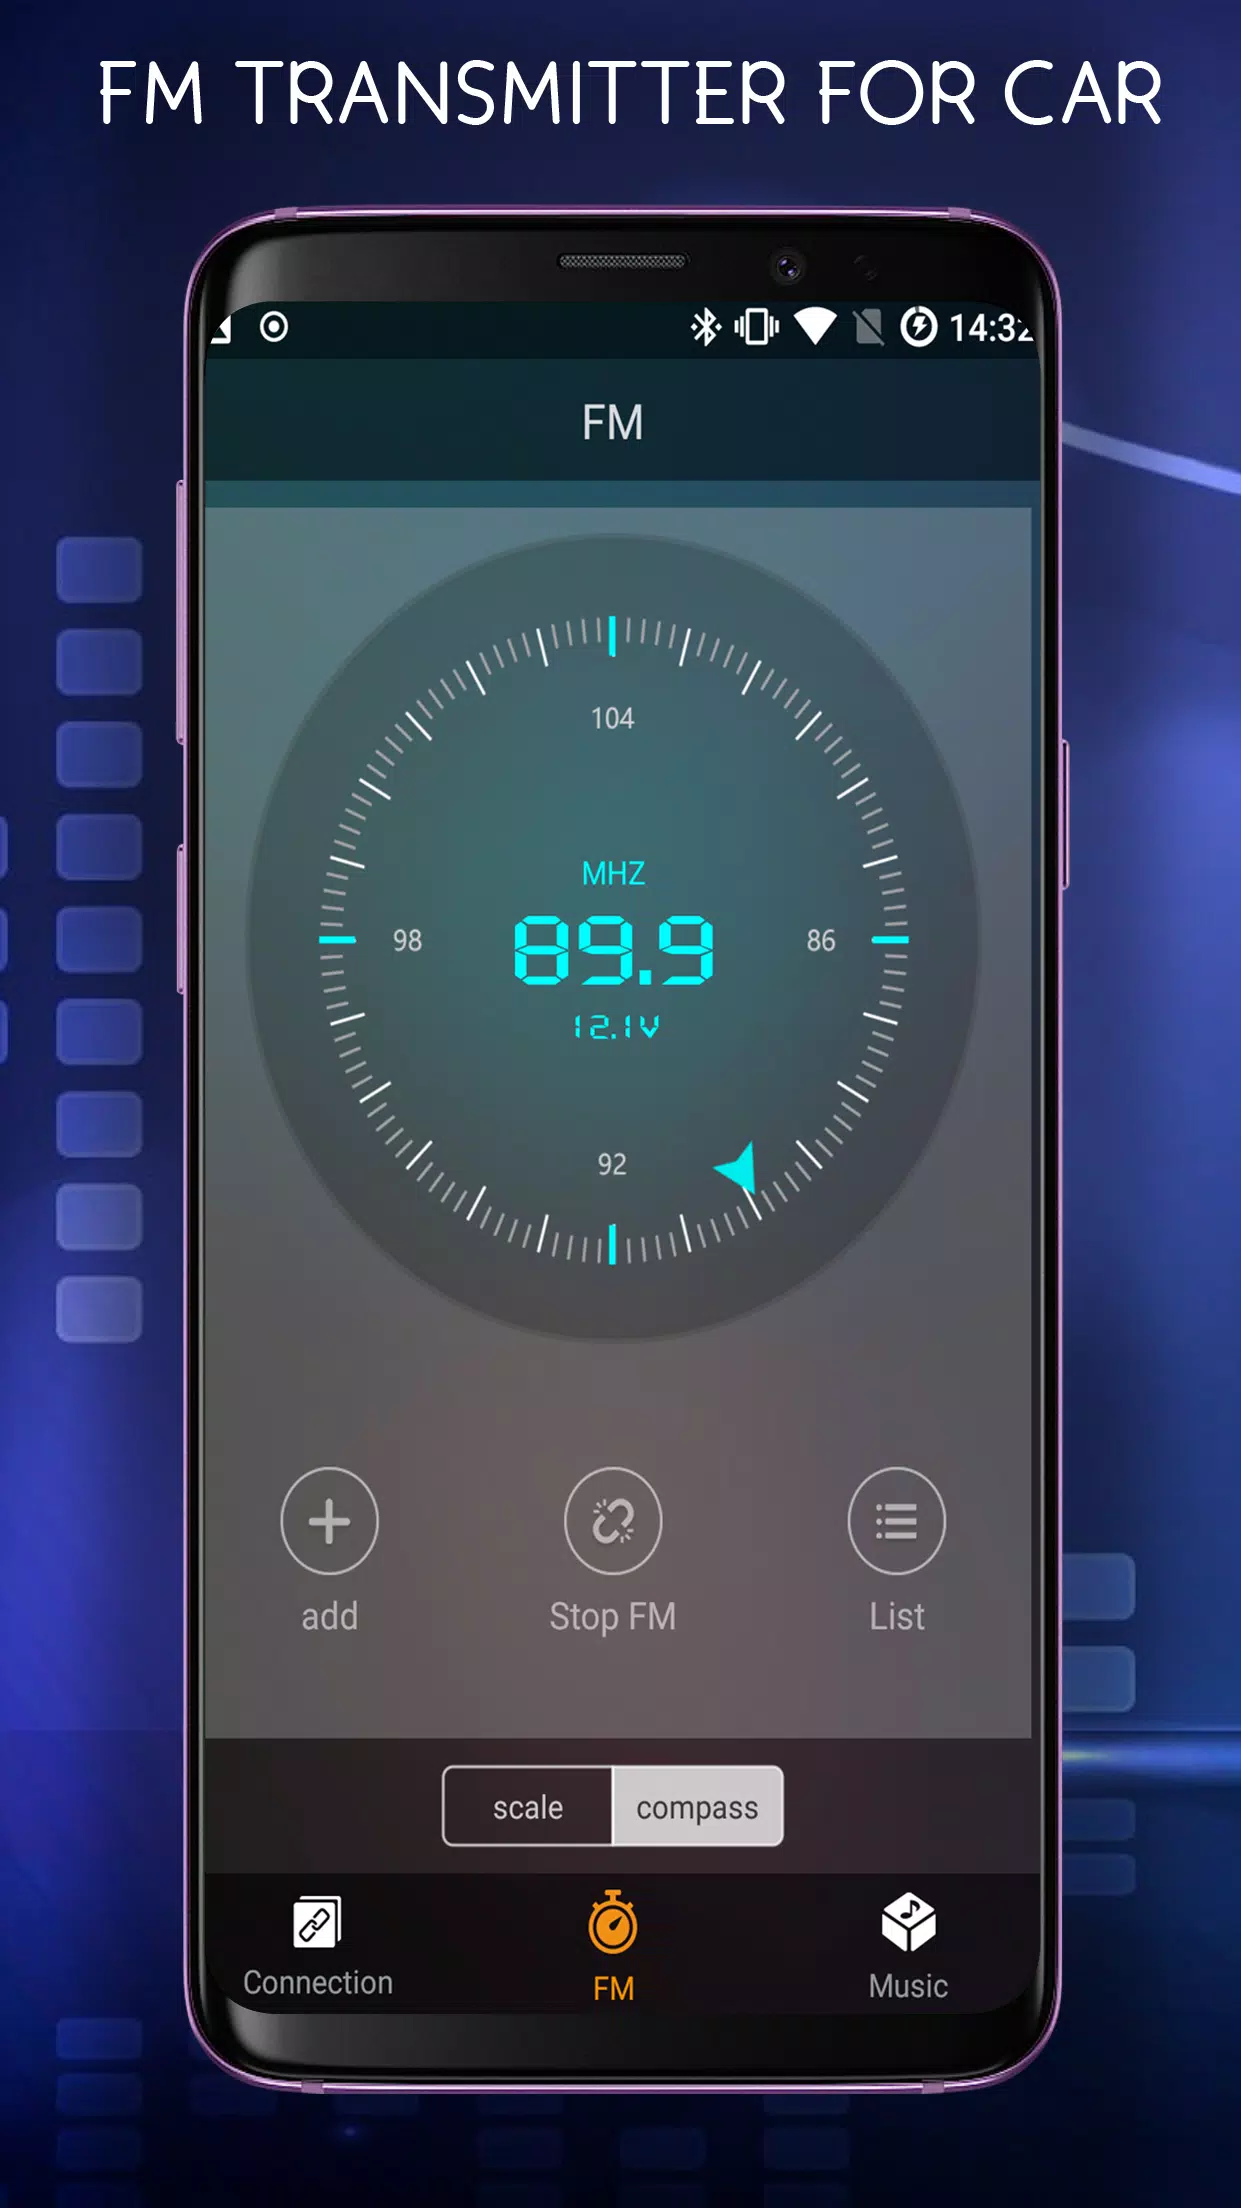 FM Transmitter For Car - Car FM Transmitter APK for Android Download